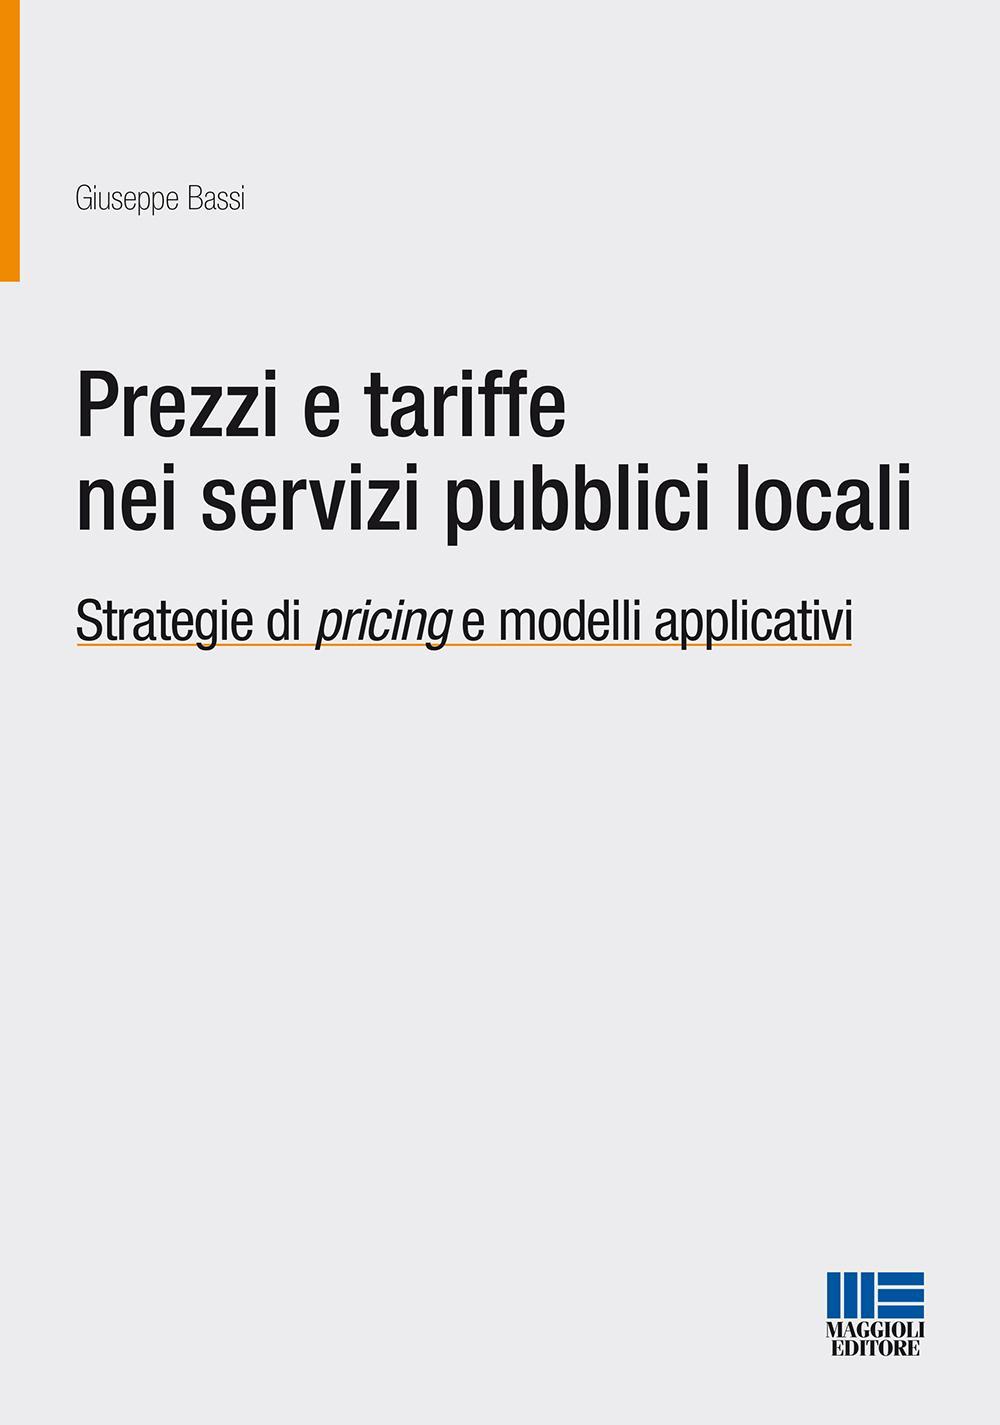 Prezzi e tariffe nei servizi pubblici locali